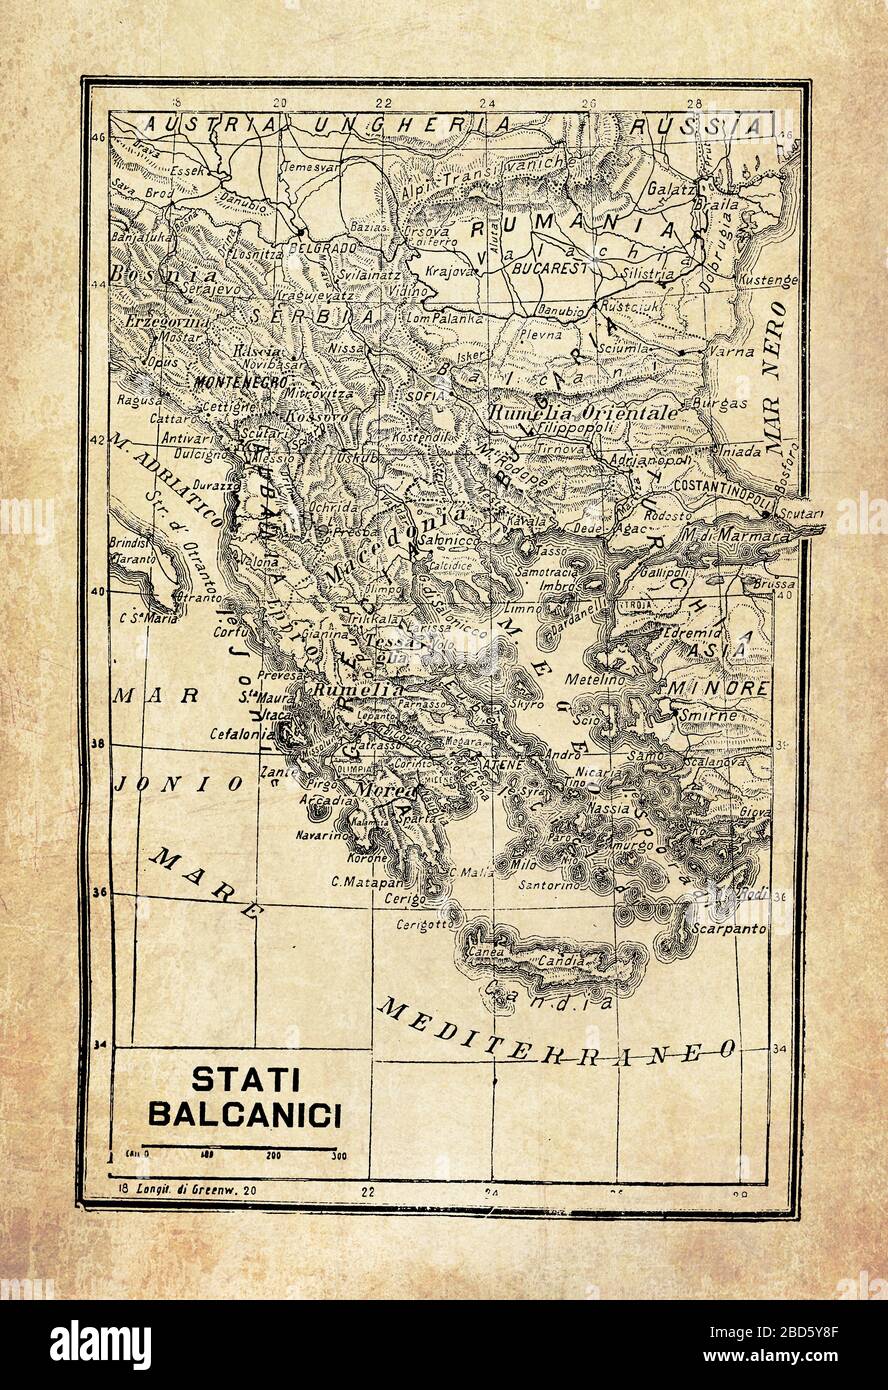 Alte Karte der Balkanhalbinsel in Südosteuropa und der Meere und Inseln, die sie umgeben, mit geografischen italienischen Namen und Beschreibungen Stockfoto